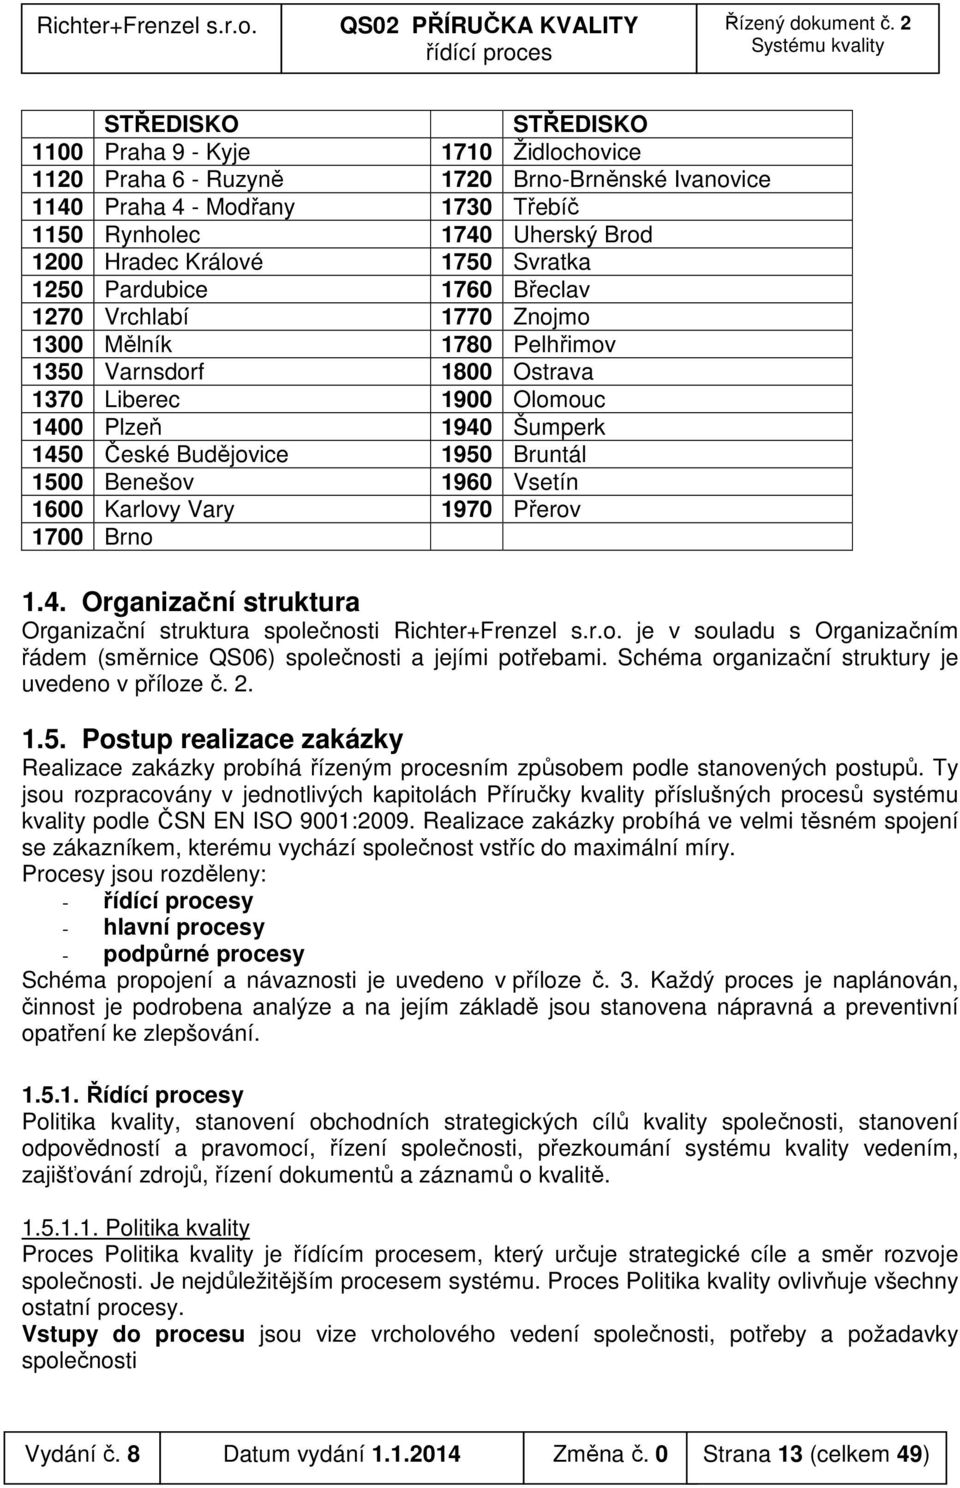 Bruntál 1500 Benešov 1960 Vsetín 1600 Karlovy Vary 1970 Přerov 1700 Brno 1.4. Organizační struktura Organizační struktura společnosti Richter+Frenzel s.r.o. je v souladu s Organizačním řádem (směrnice QS06) společnosti a jejími potřebami.